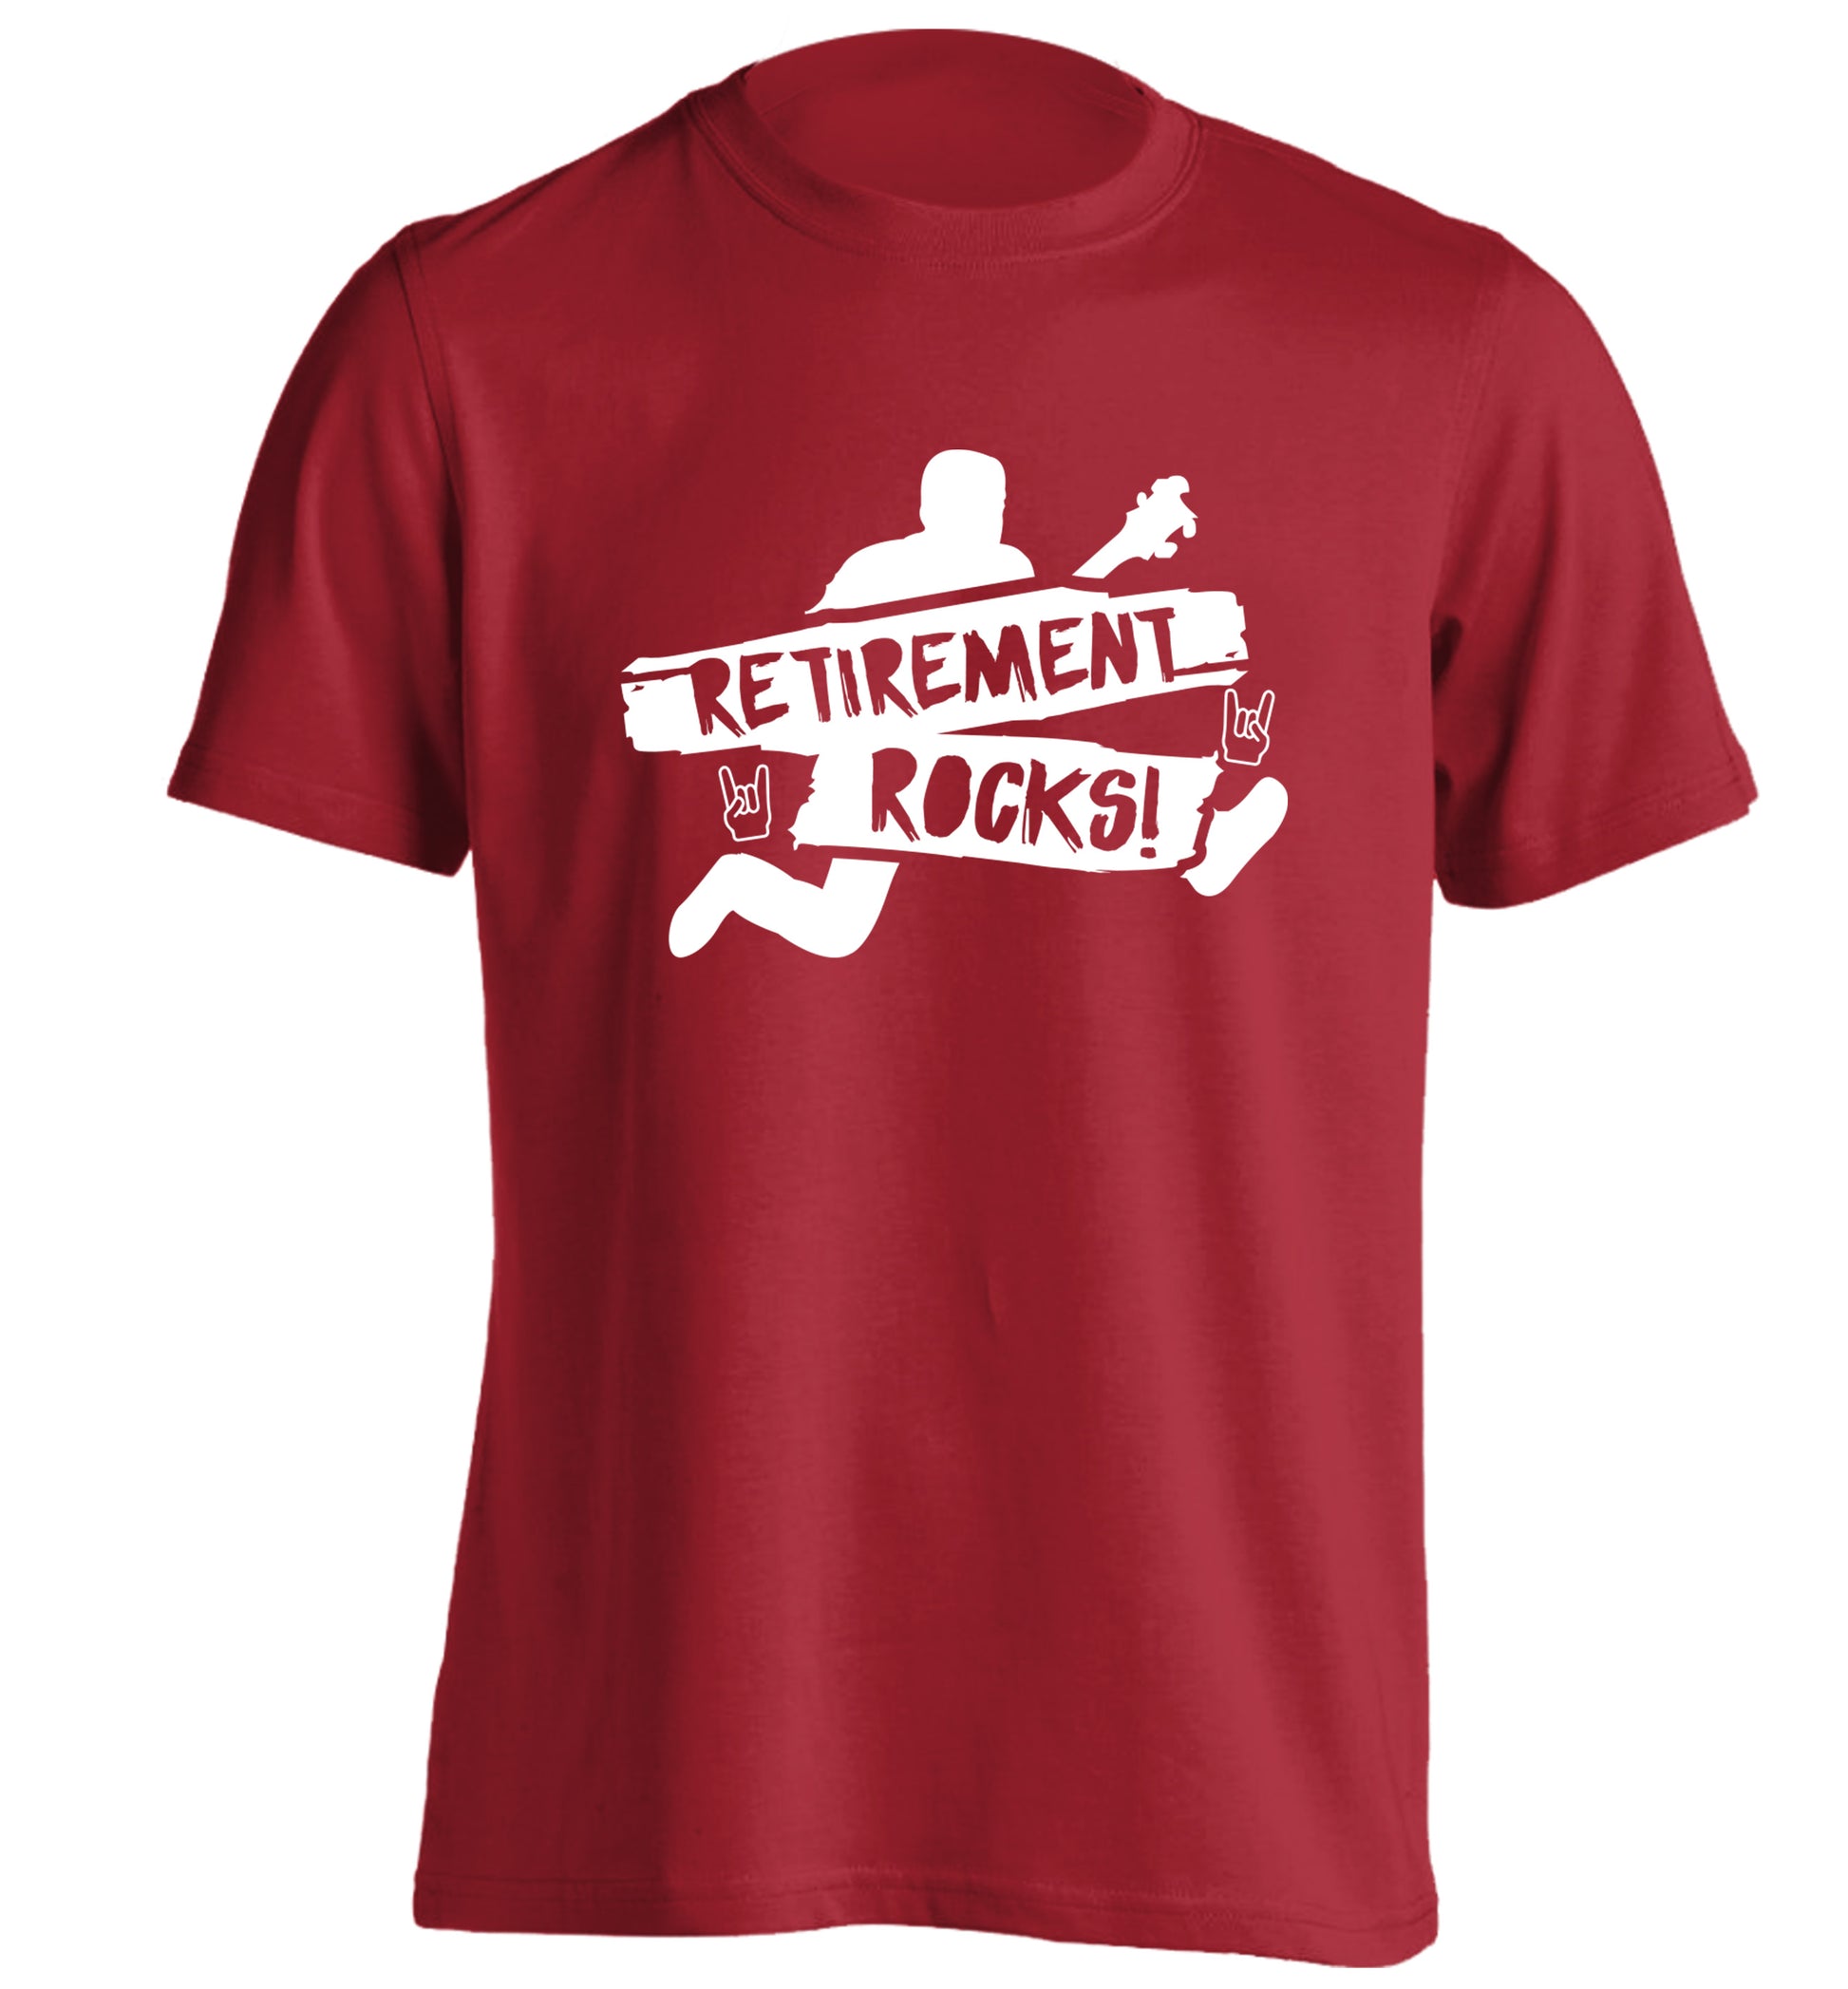 Retirement Rocks adults unisex red Tshirt 2XL